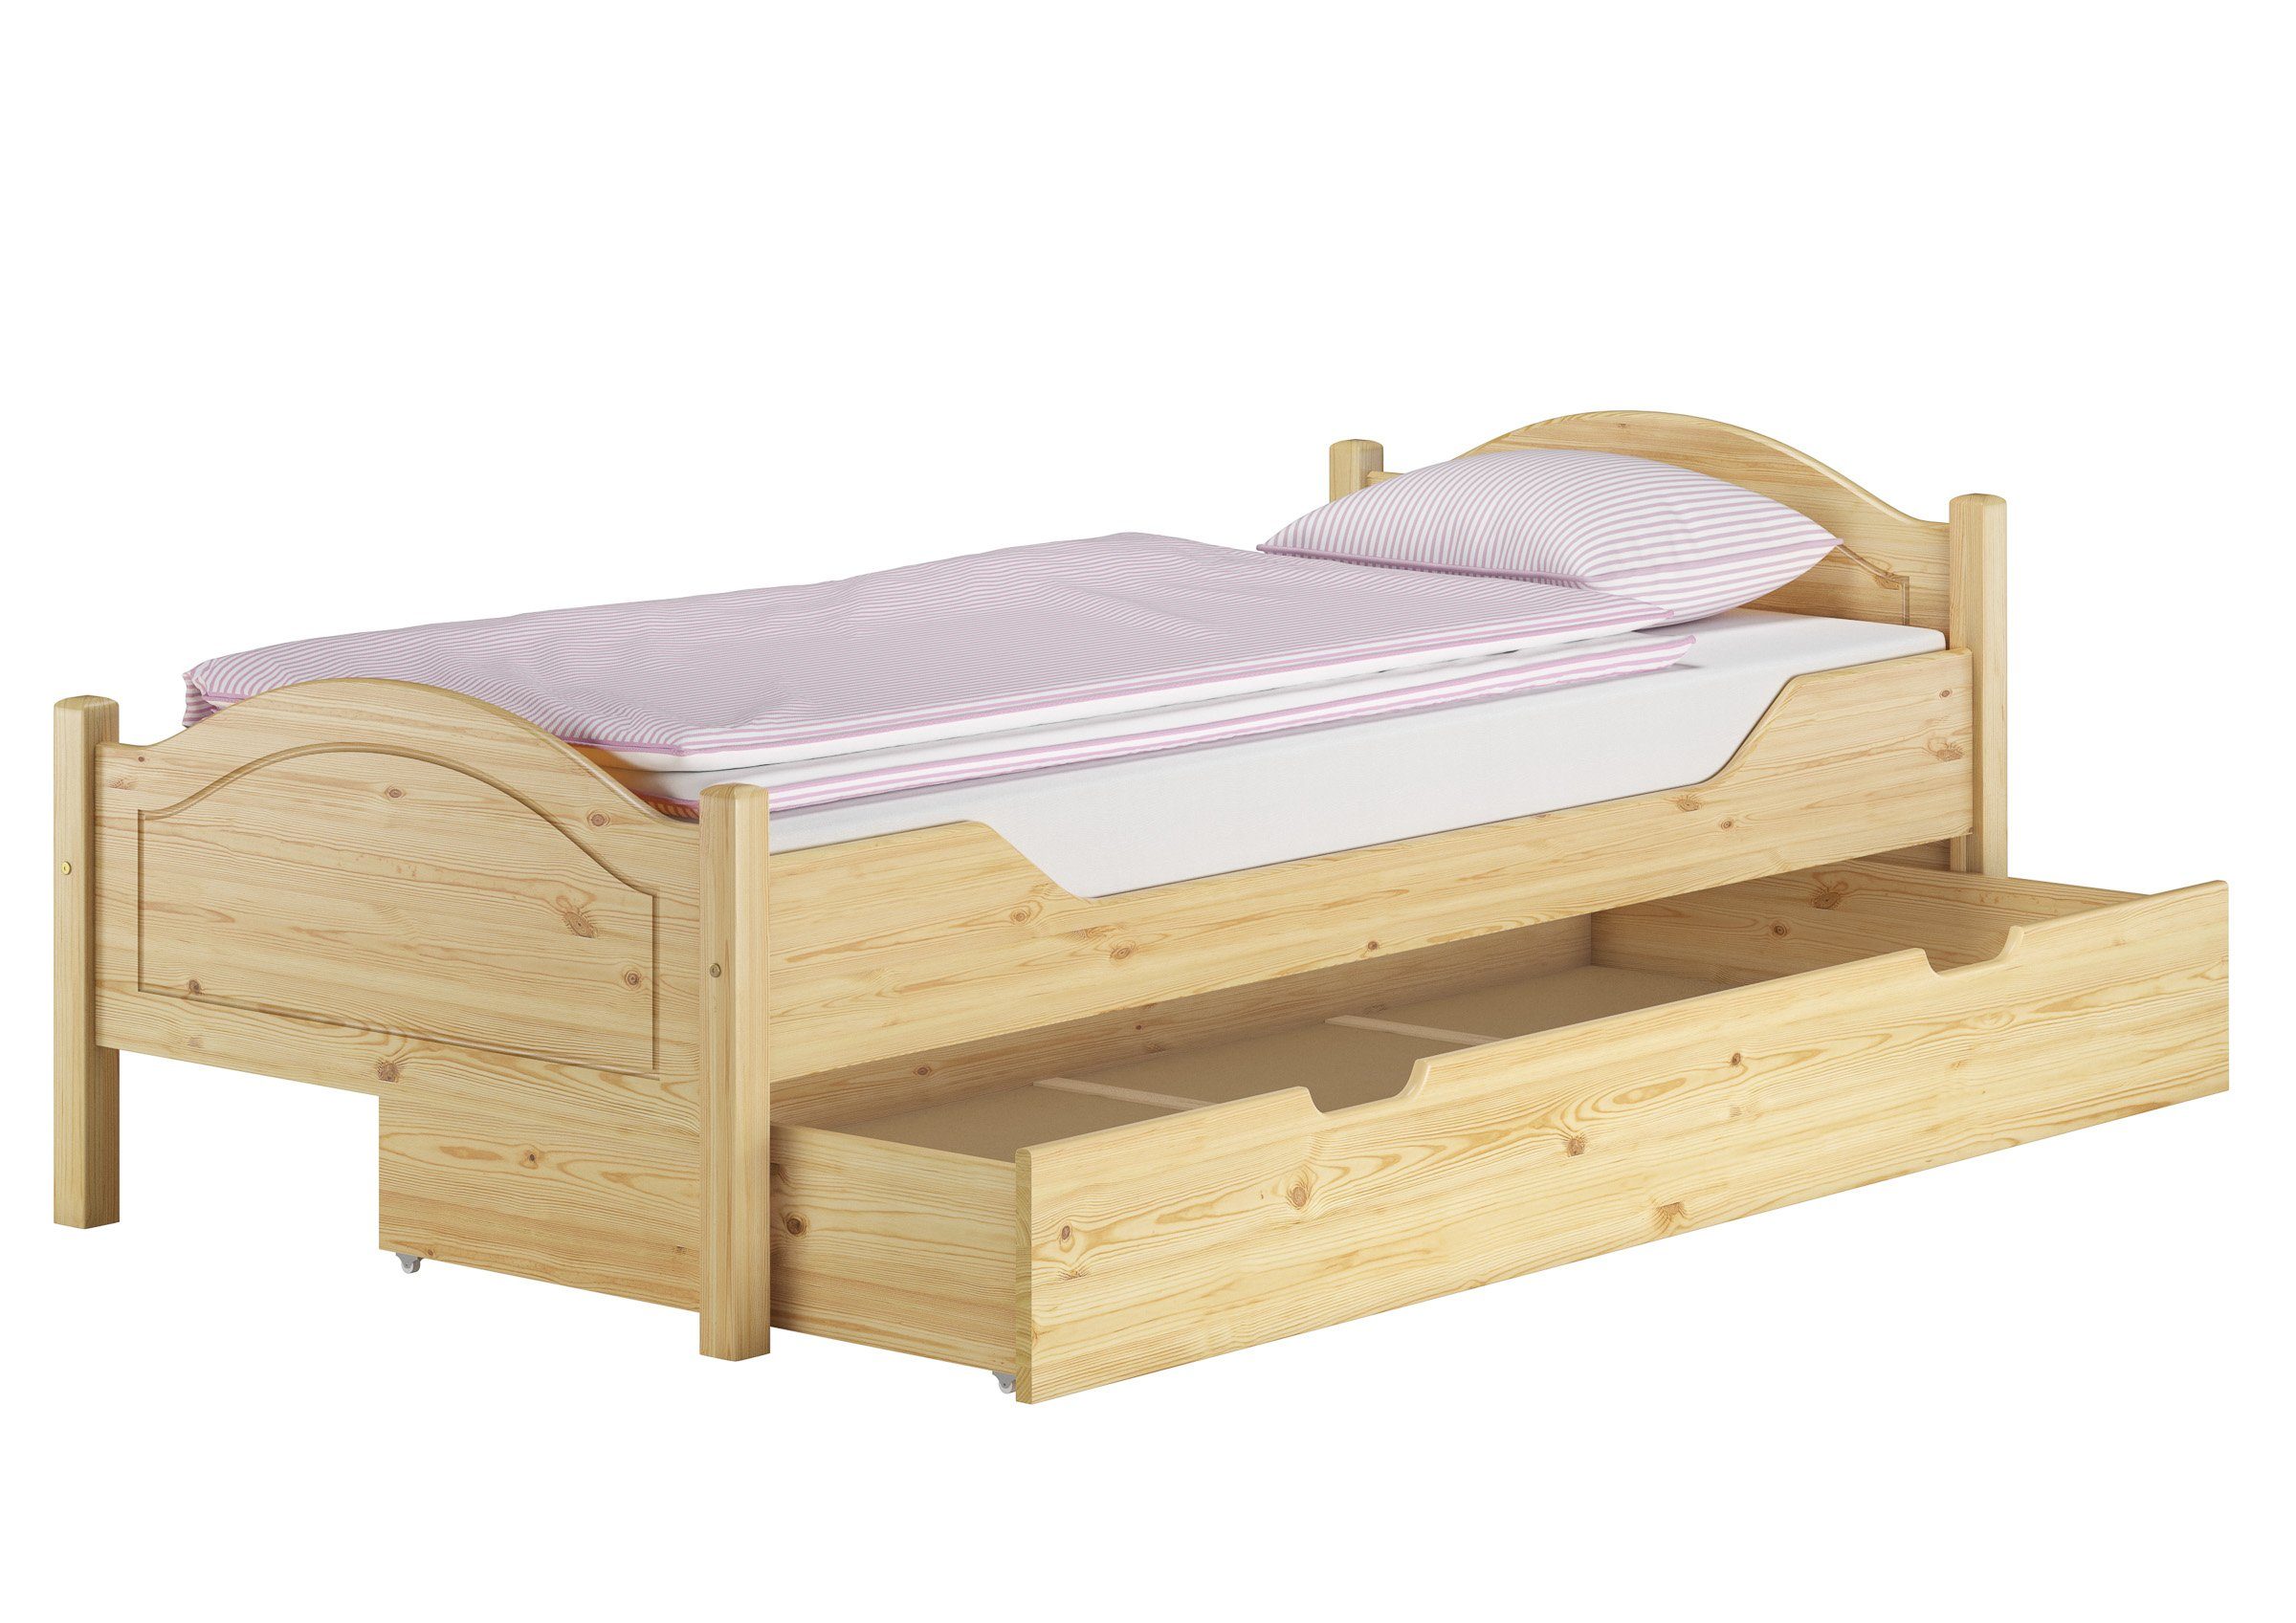 ERST-HOLZ Bett Einzelbett Kiefer 100x200 mit Rost, Matratze und Bettkasten, Kieferfarblos lackiert